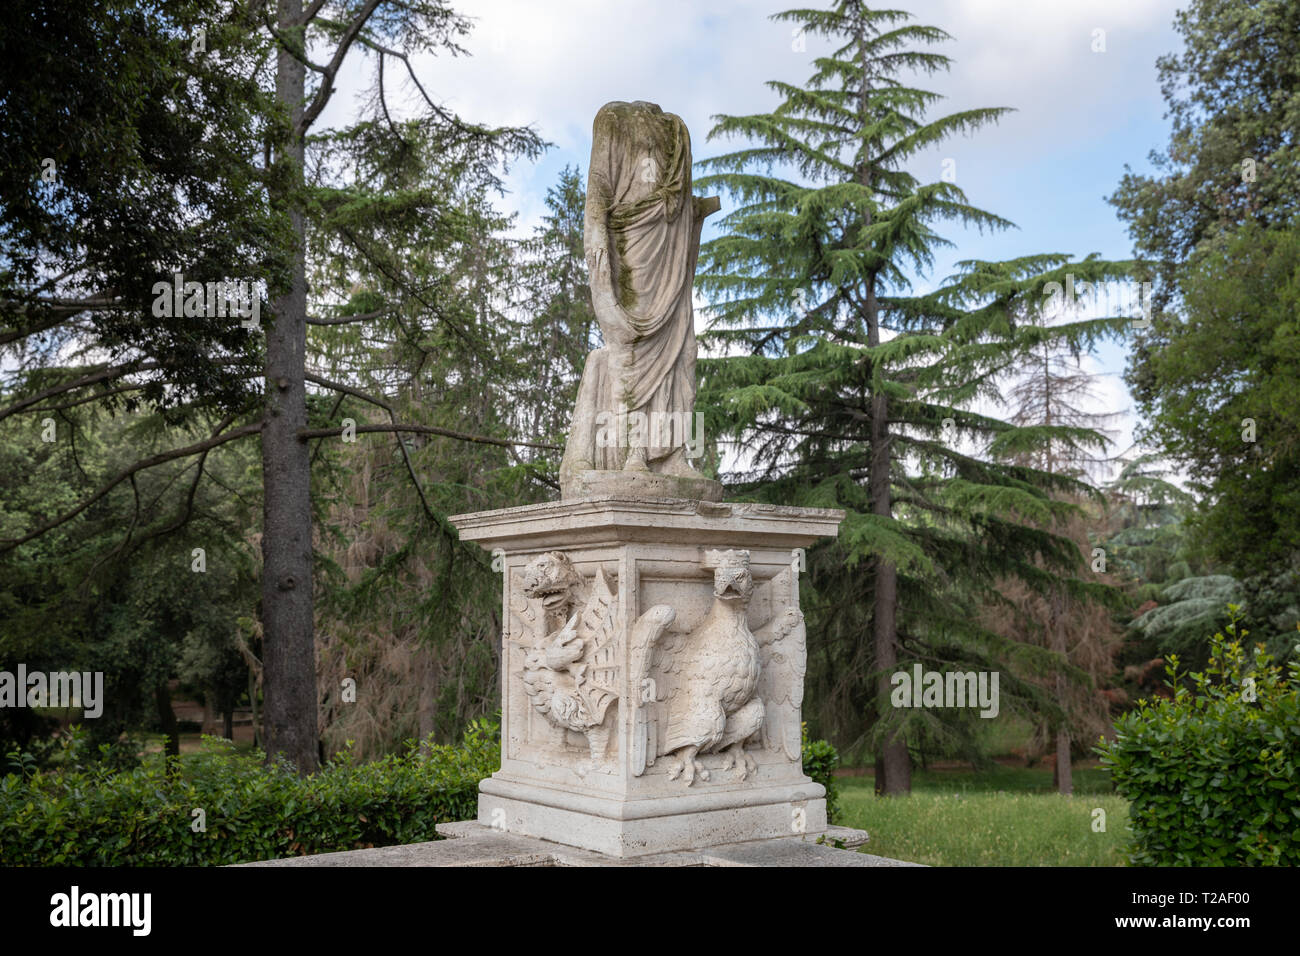 Rome, Italy - June 22, 2018: Art sculpture in green garden of Villa Borghese. Summer day Stock Photo